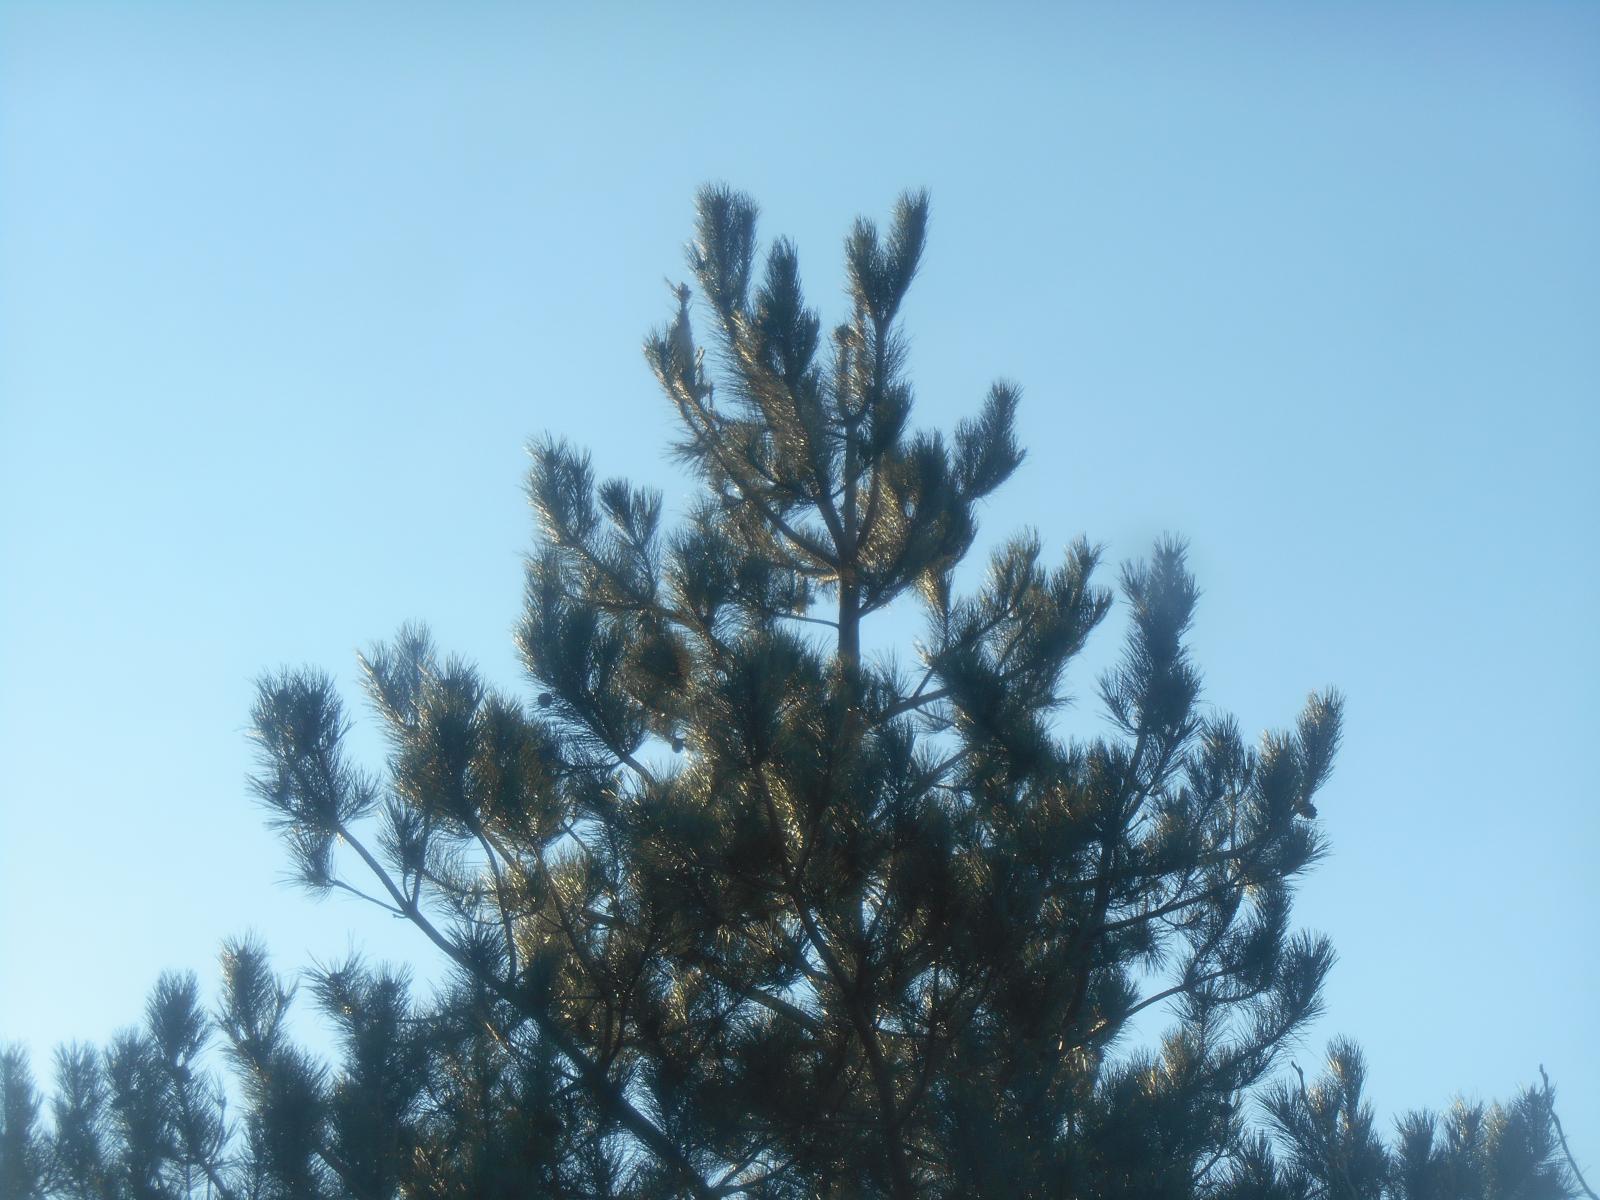 Le pin dans le ciel ( Les Moutiers en Retz )